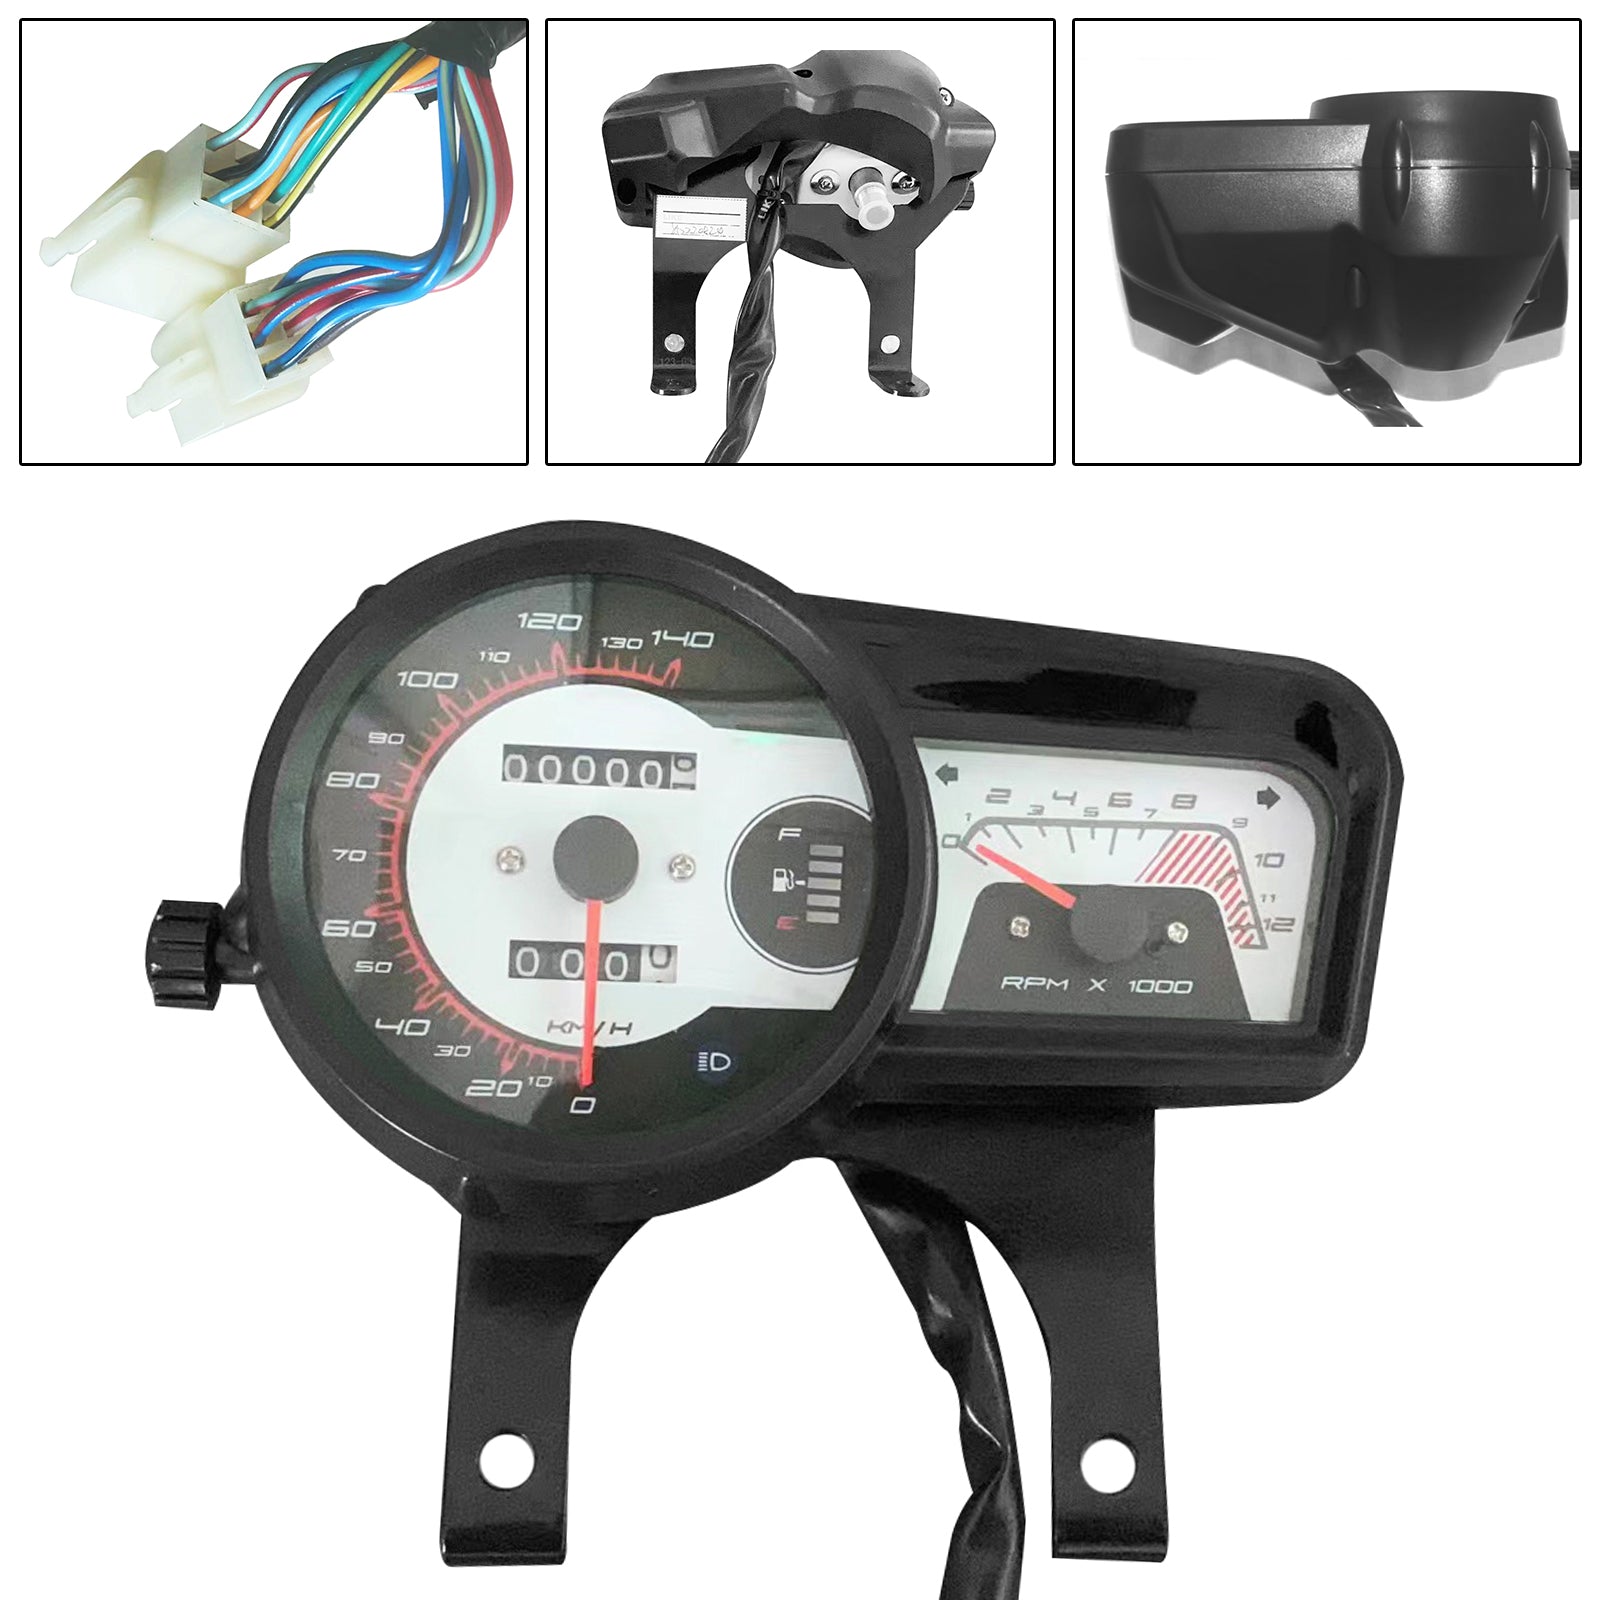 140Km Speedometer Gauge Tachometer Odometer Fits For Toya Kd150-F Kd 150-F 2015 Generic